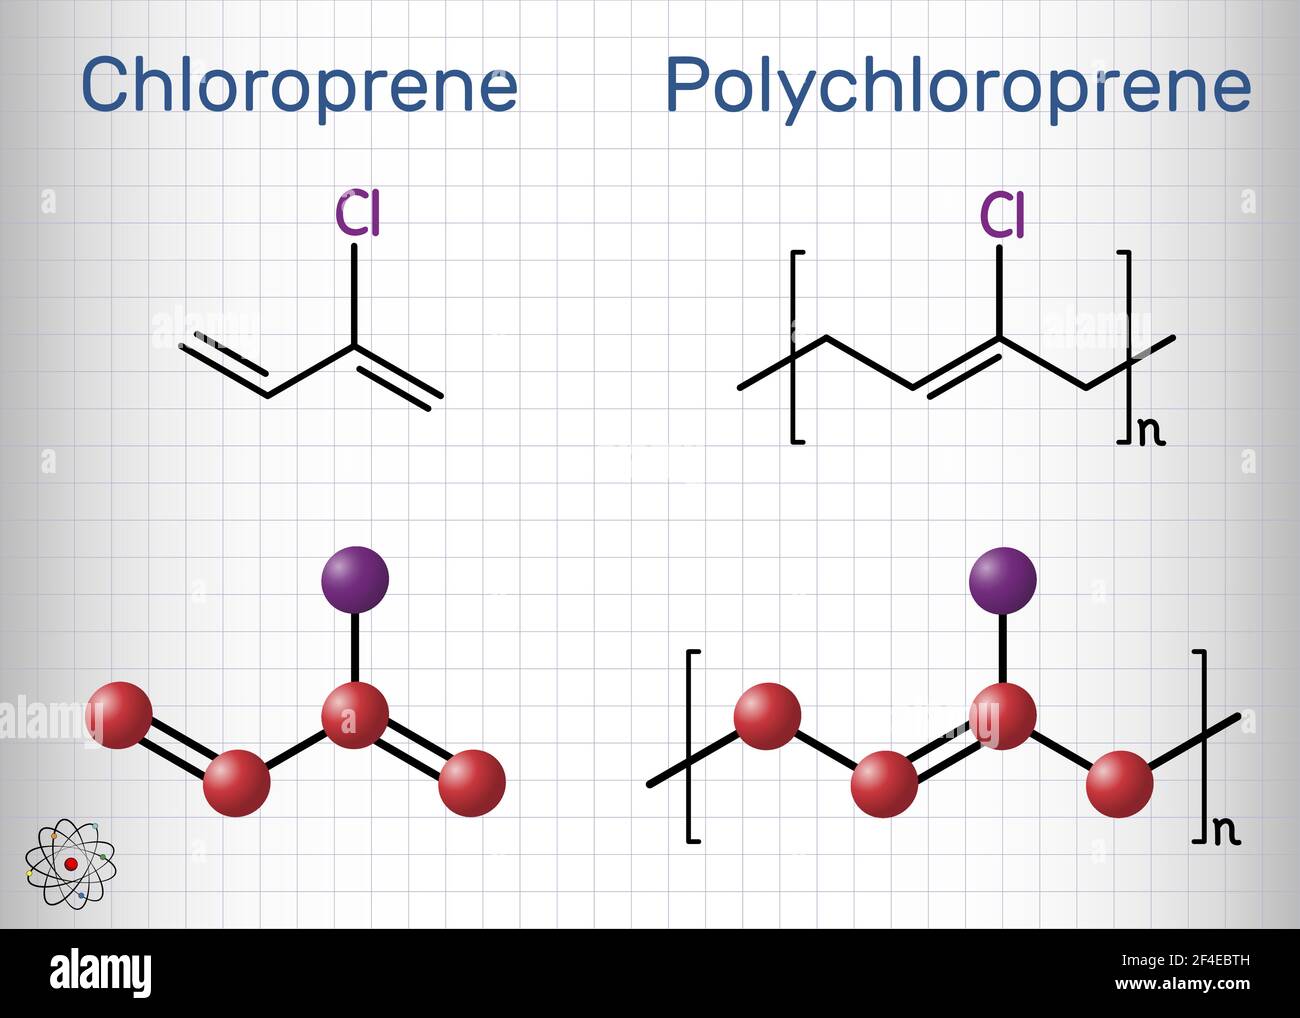 Molécule de chloroprène et de polychloroprène. Monomère et polymère. Néoprène, caoutchouc synthétique obtenu par polymérisation du chloroprène. Chimie structurelle Illustration de Vecteur